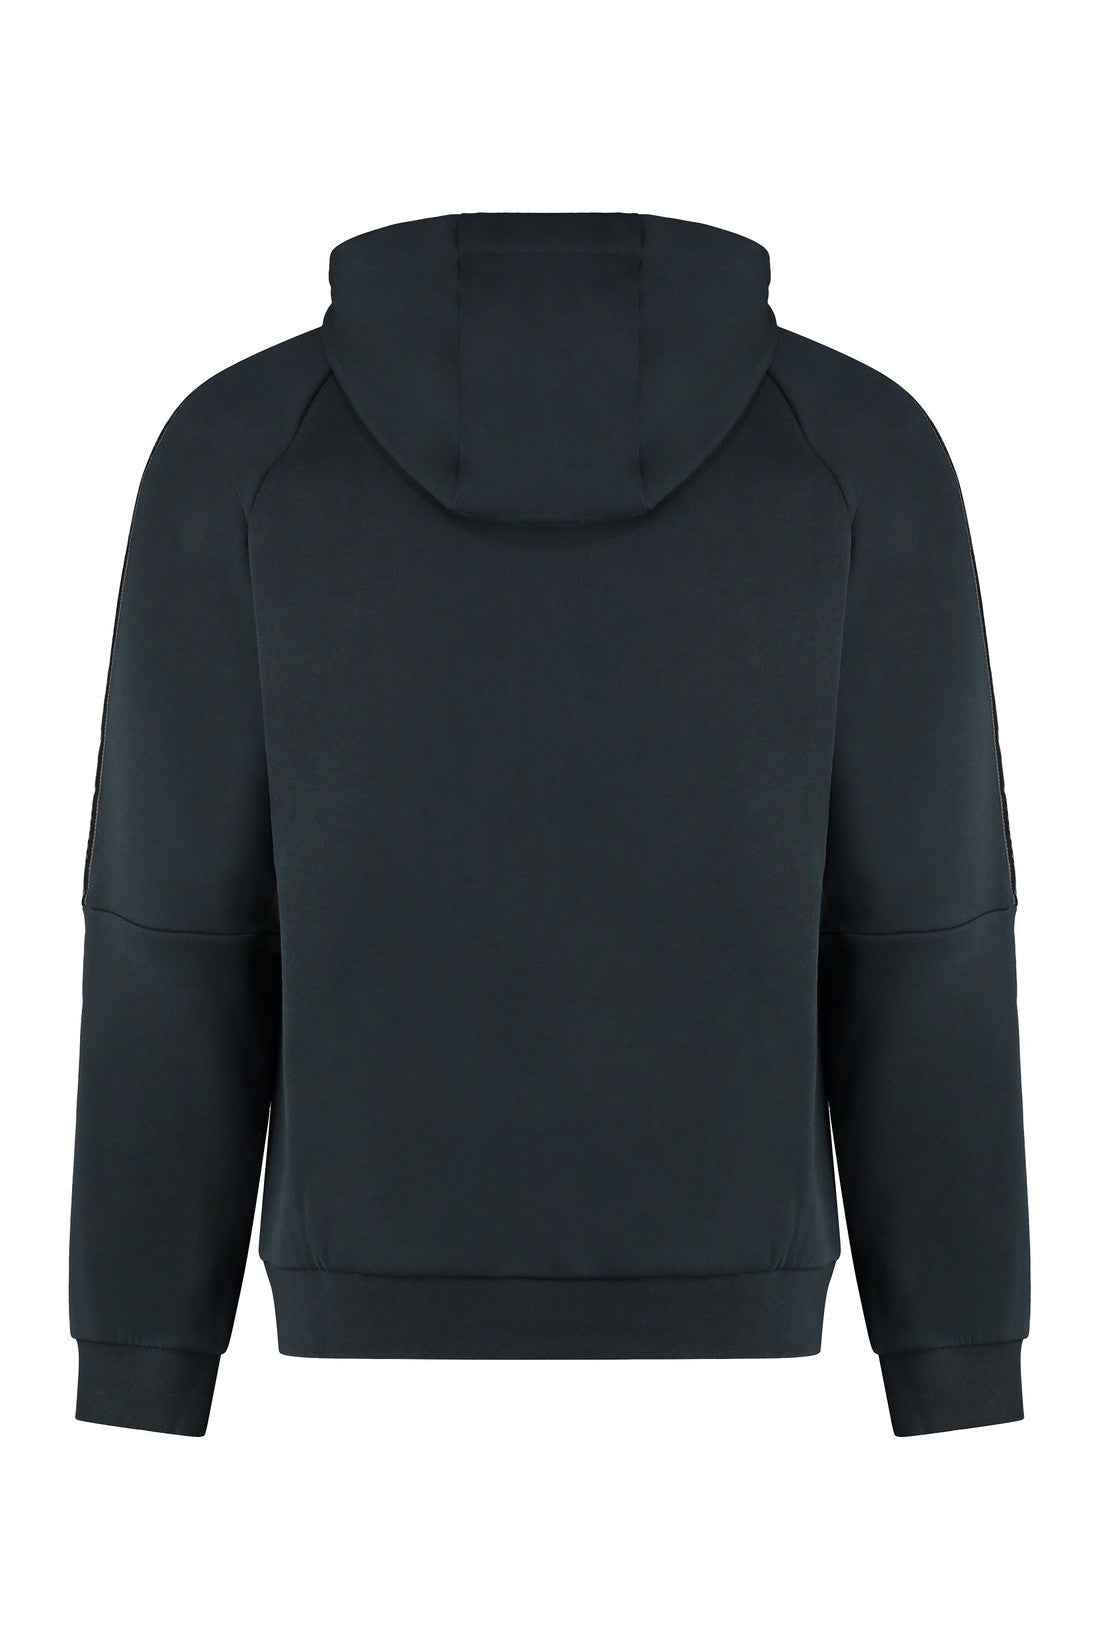 EA7-OUTLET-SALE-Cotton full zip hoodie-ARCHIVIST